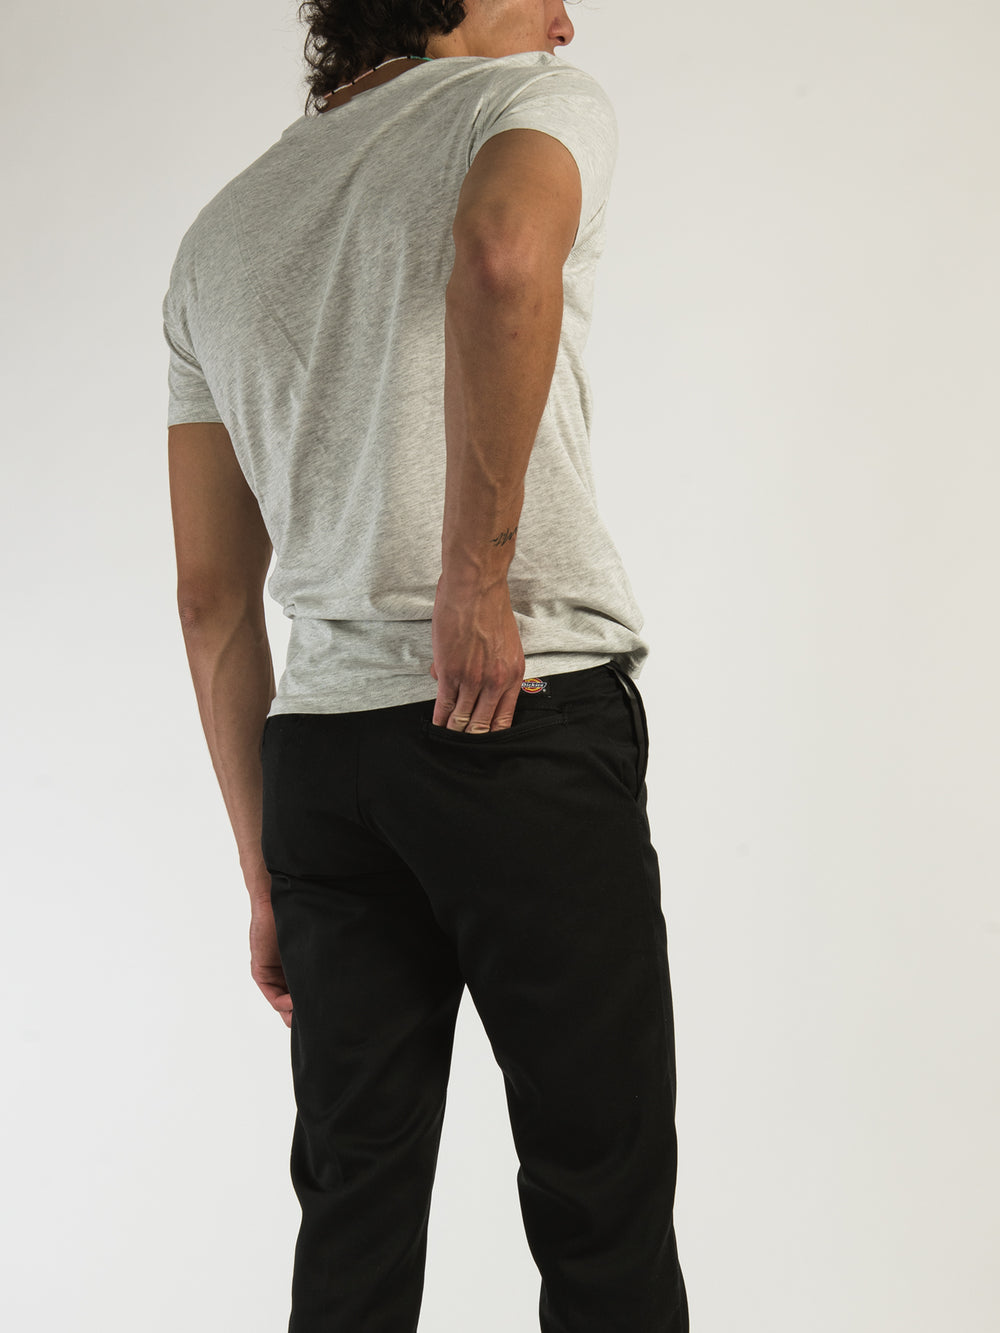 Dickies Pants: Men's 874 FBK Black Moisture-Wicking Wrinkle-Resistant Work  Pants